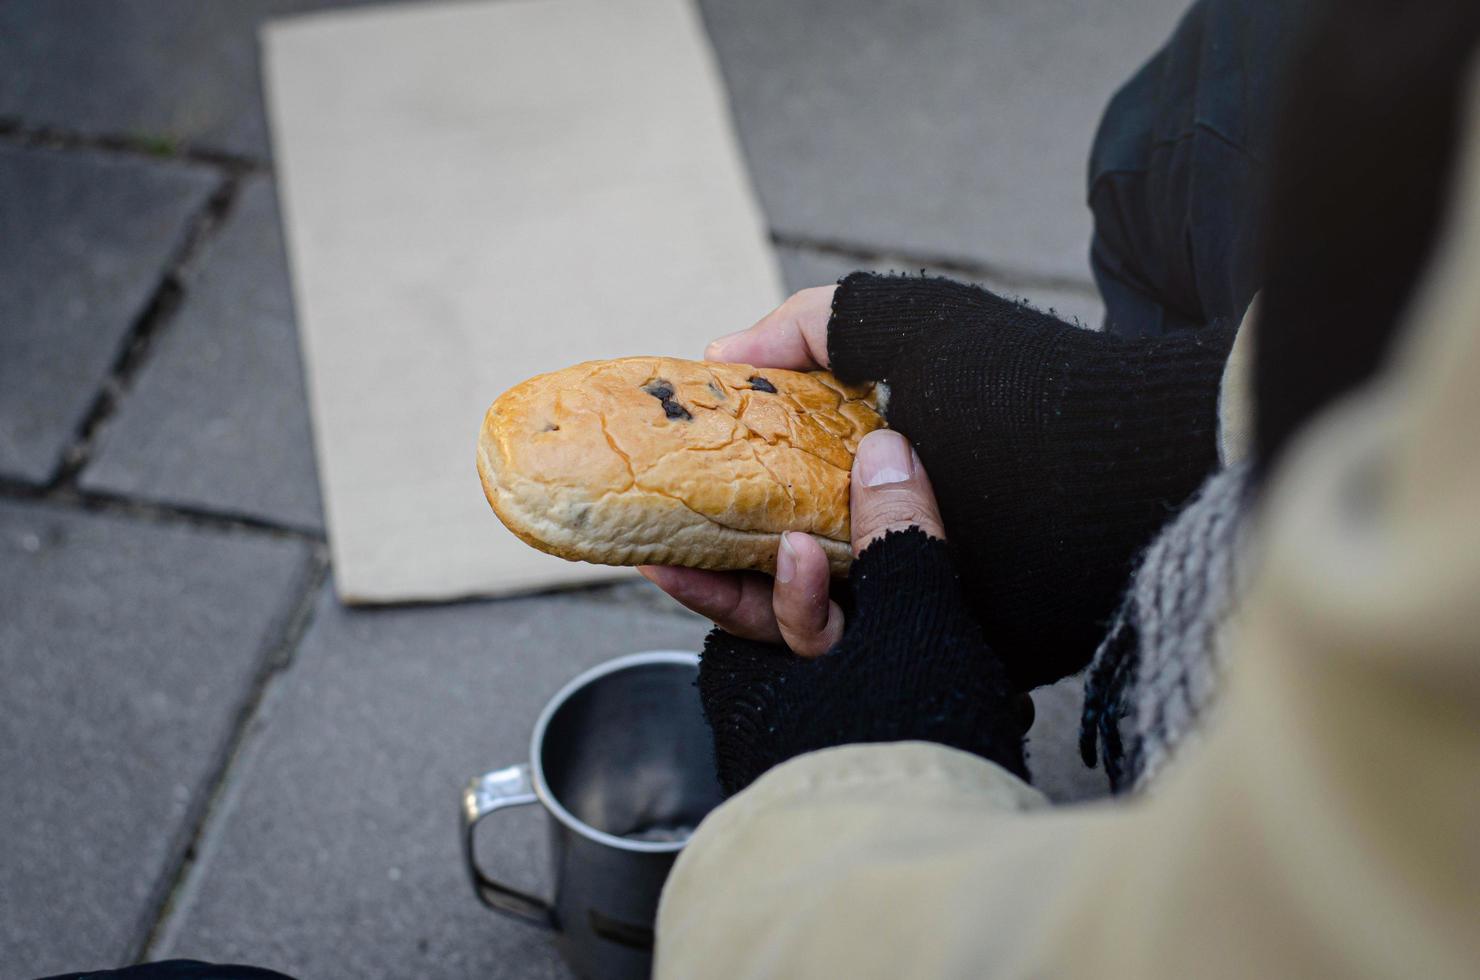 um mendigo sem-teto comendo pão e pedindo ajuda aos transeuntes. foto